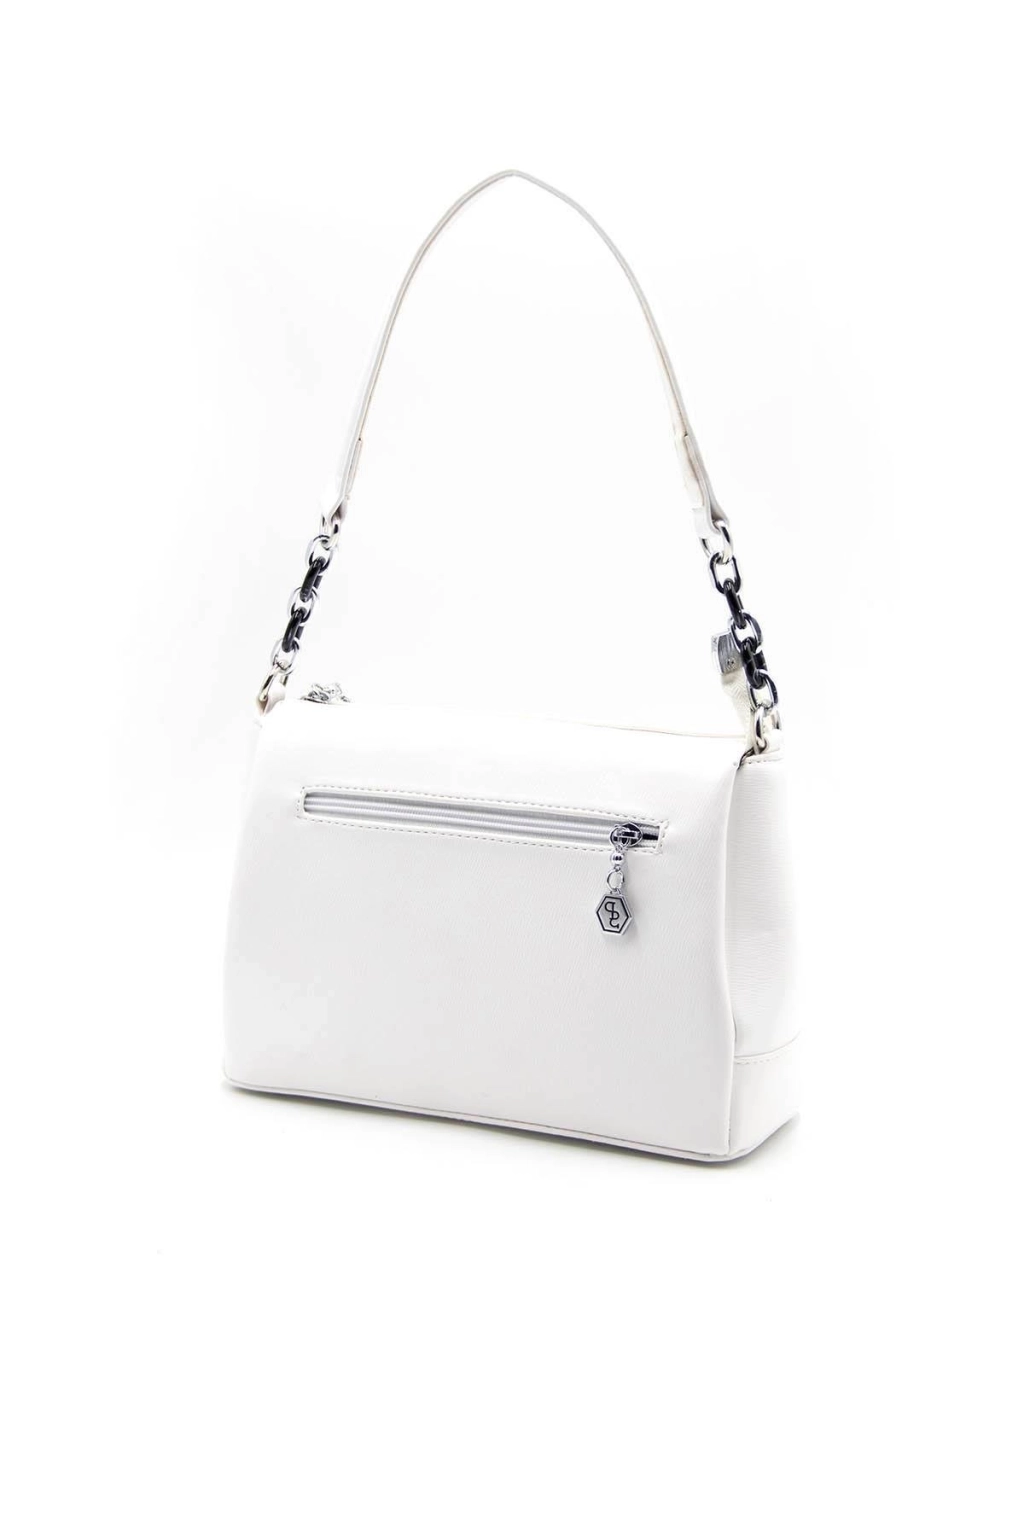 Дамска чанта в бяло от еко кожа SILVER&POLO